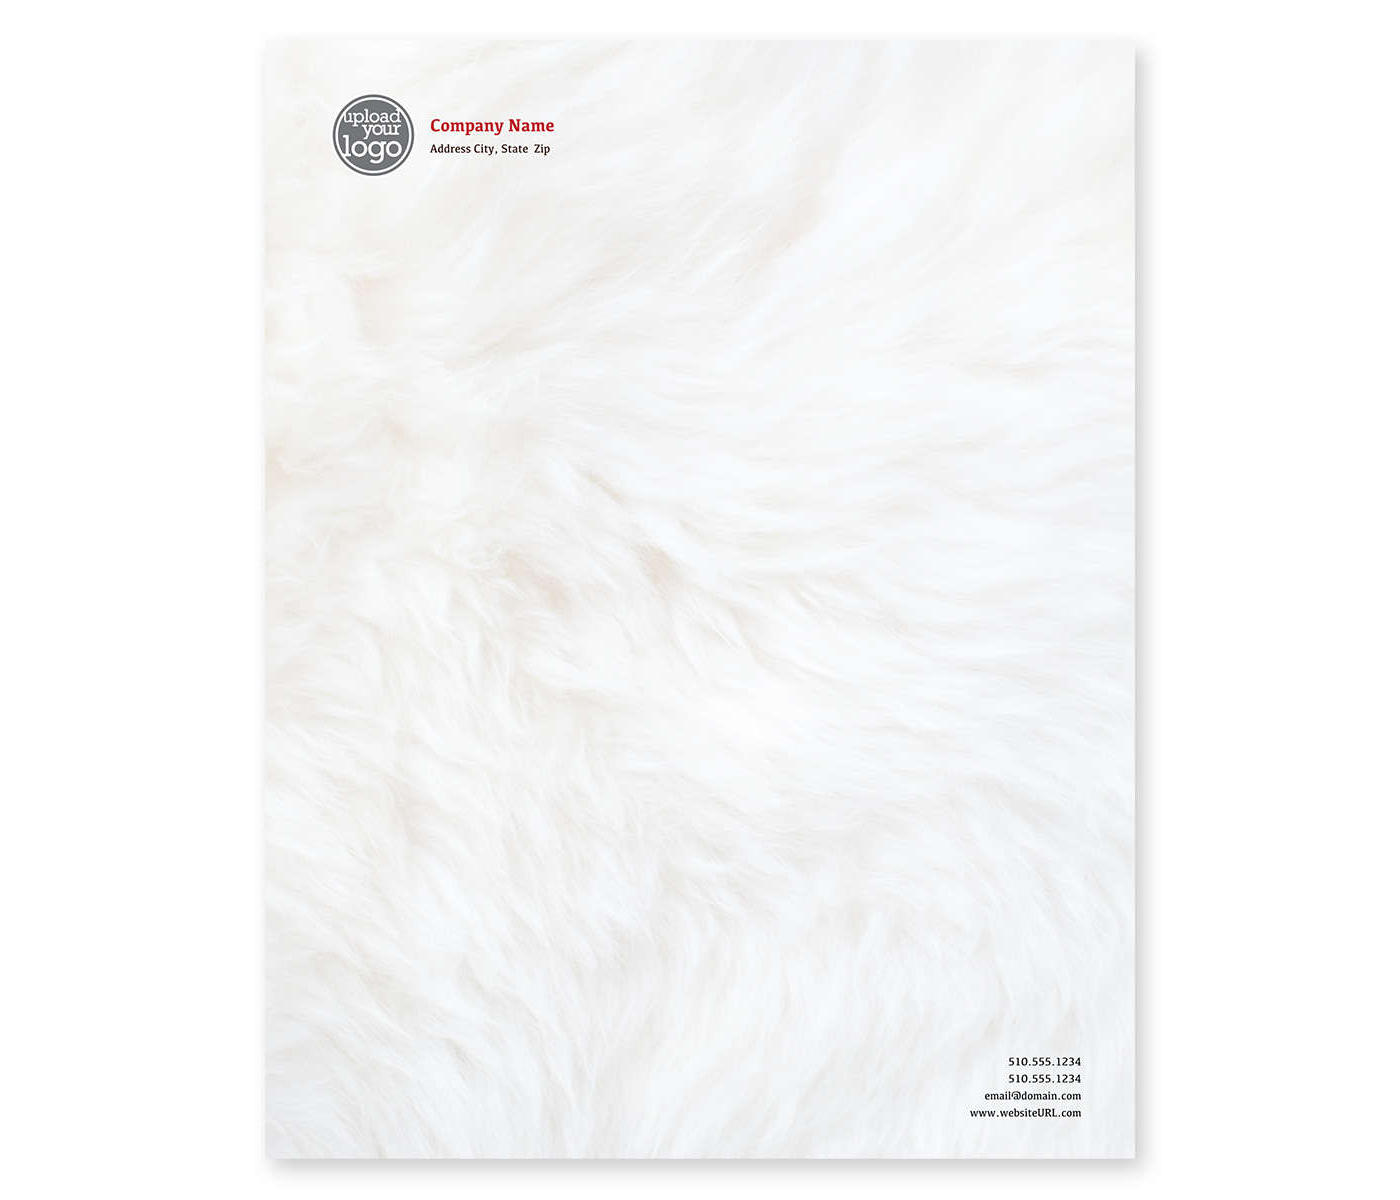 Fur Fever Letterhead 8-1/2x11